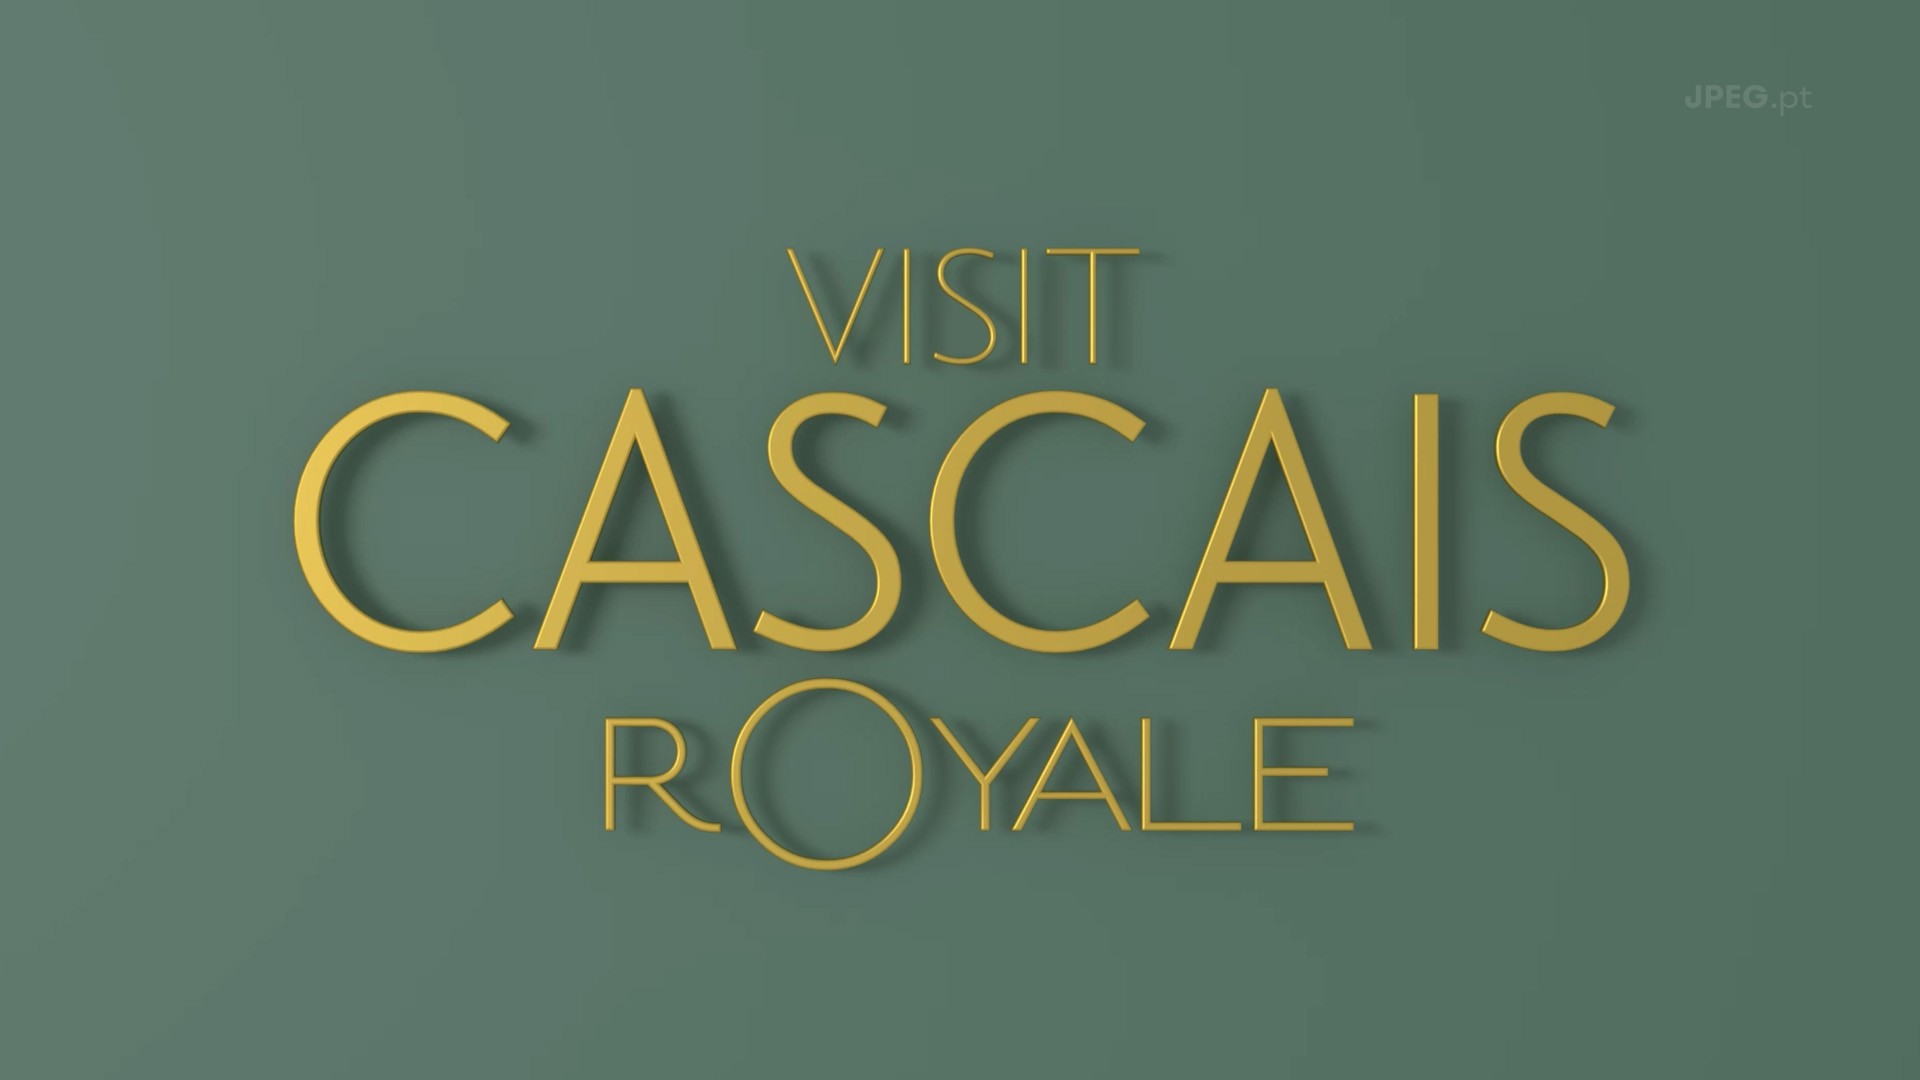 Visite Cascais Royale